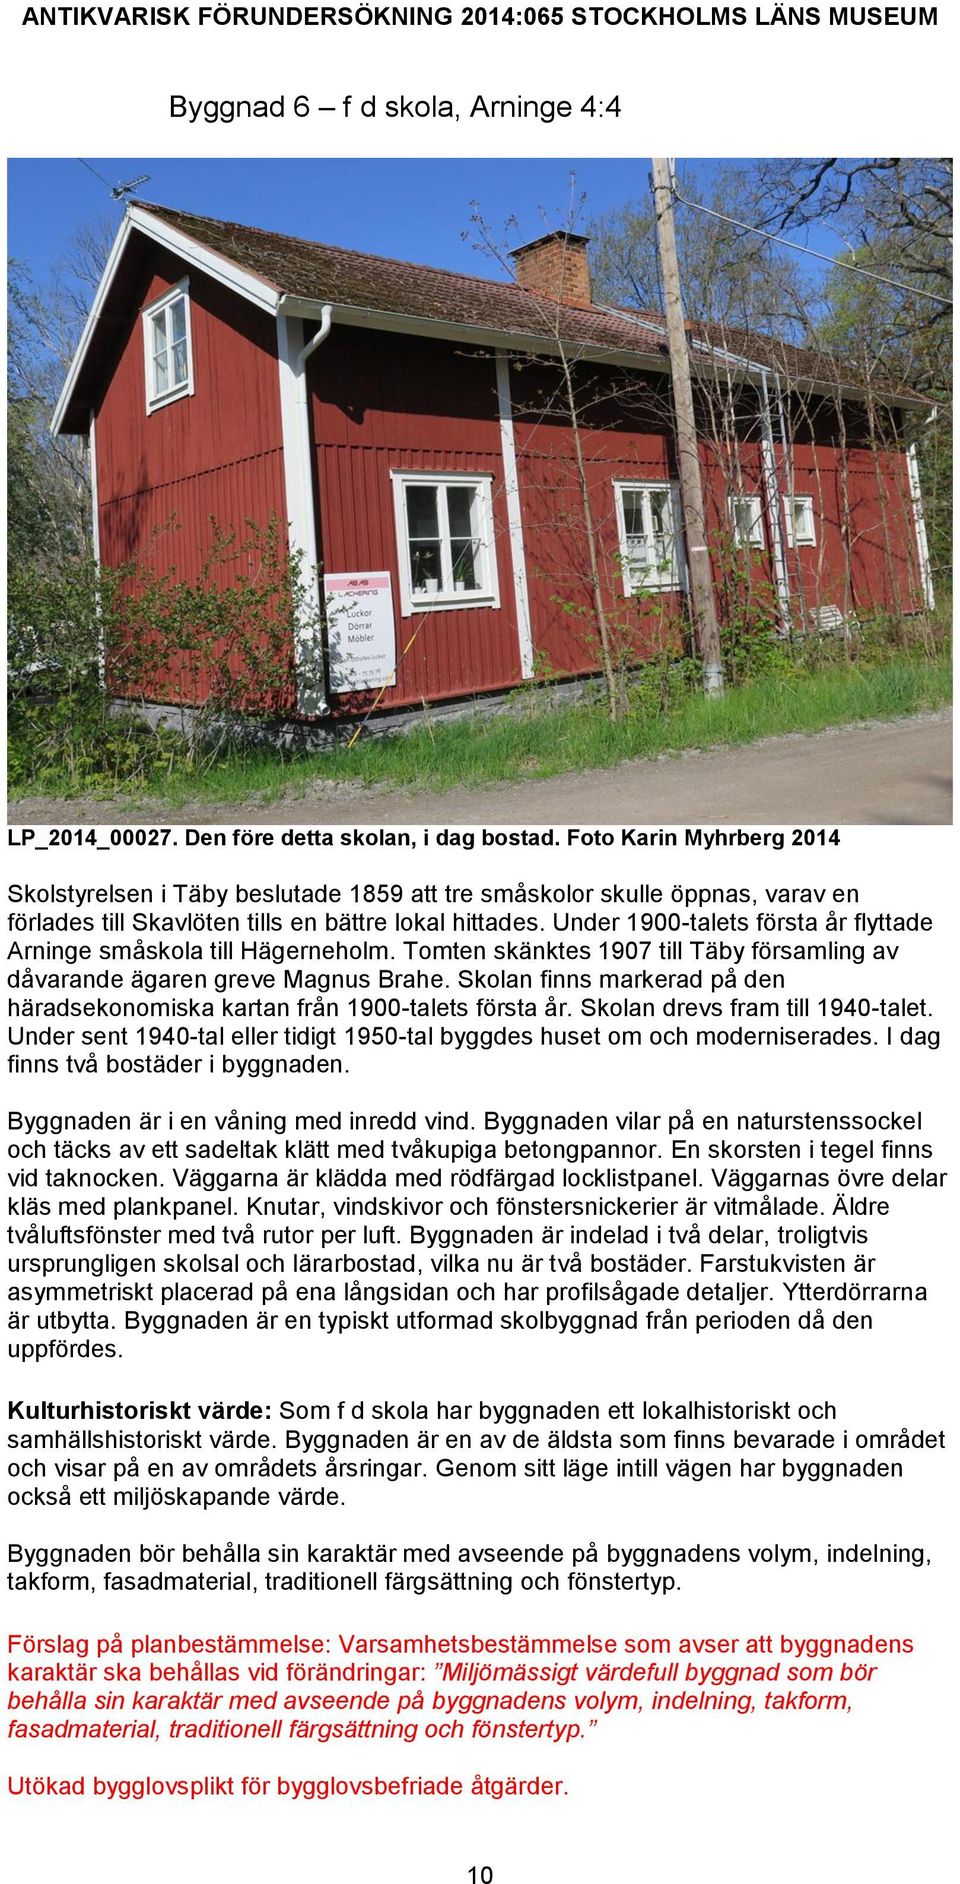 Under 1900-talets första år flyttade Arninge småskola till Hägerneholm. Tomten skänktes 1907 till Täby församling av dåvarande ägaren greve Magnus Brahe.